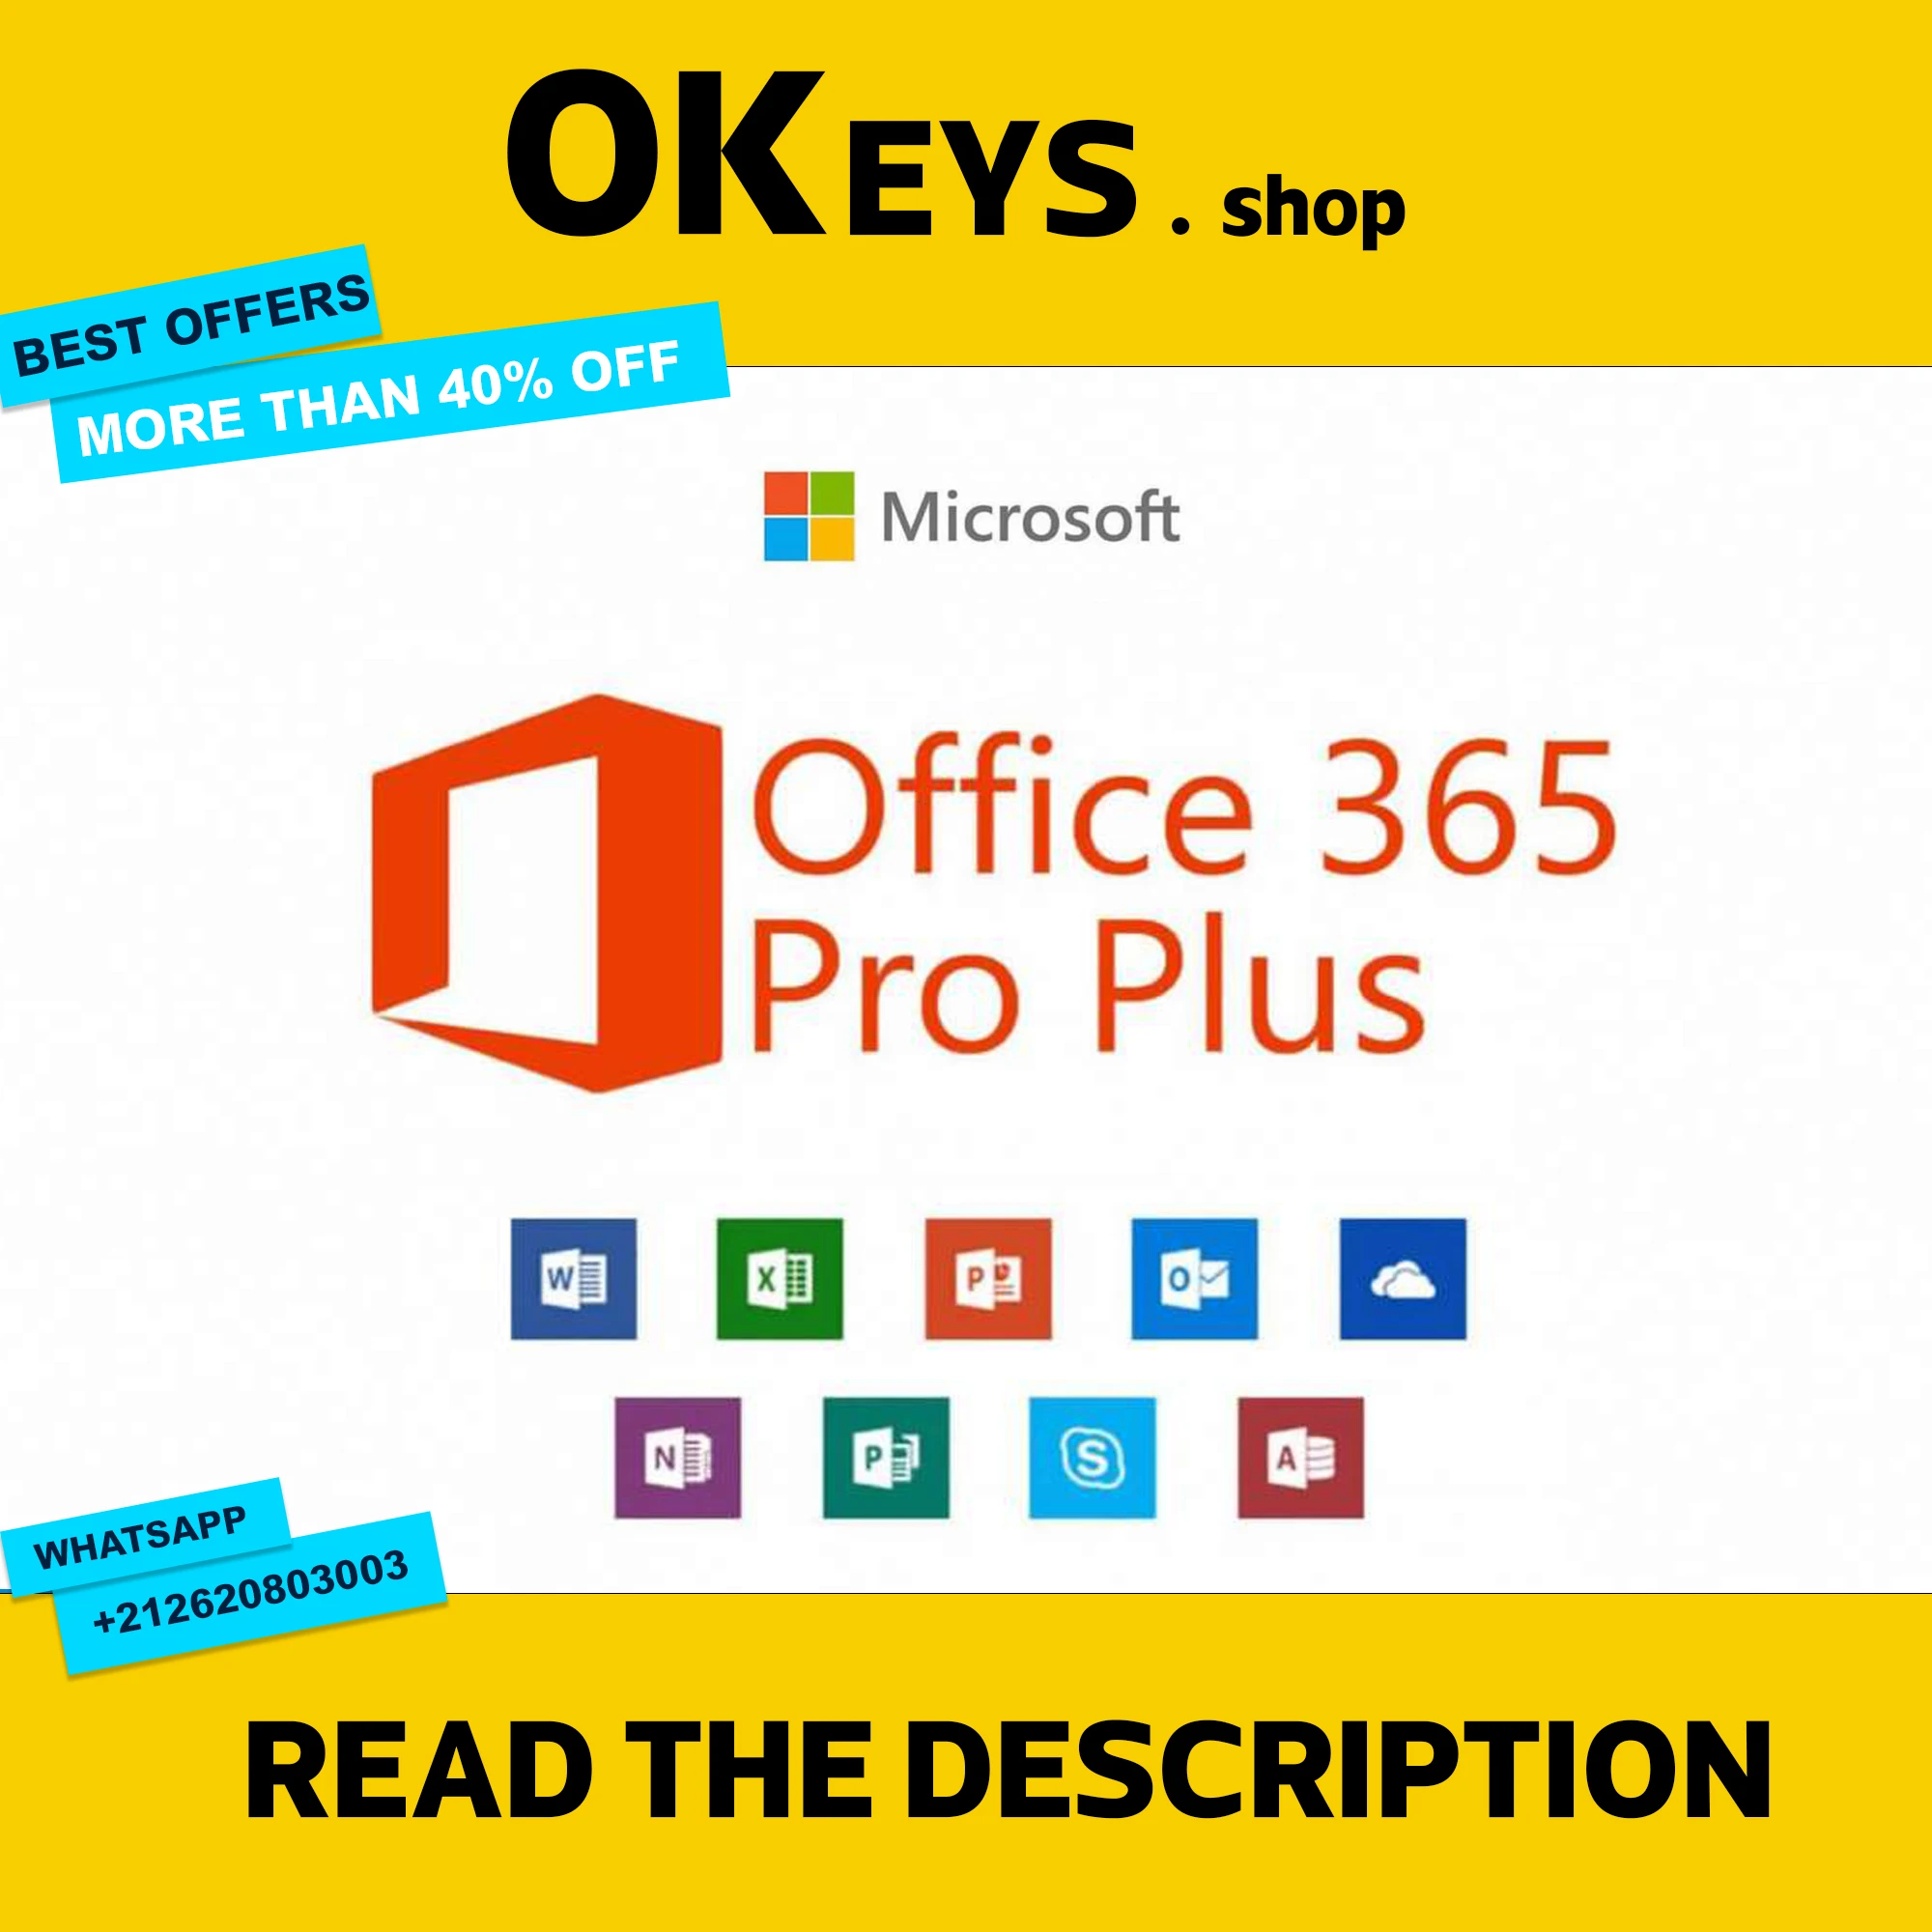 

{Office 365 Pro Plus работает на 5 устройствах глобального использования}